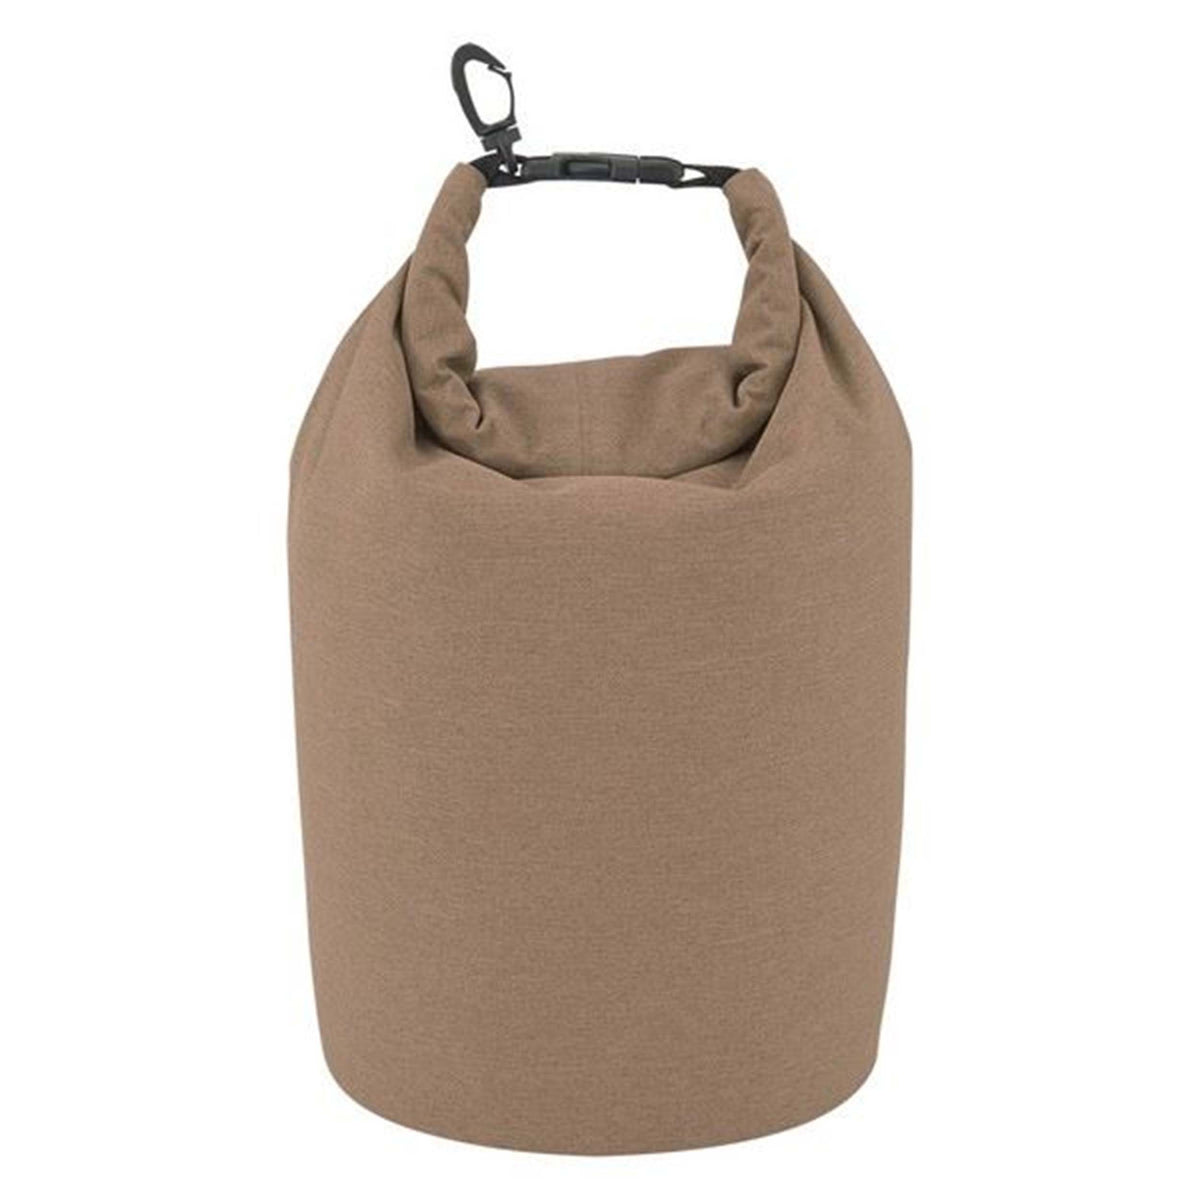 Heathered Waterproof Dry Bag In Bulk- Assorted